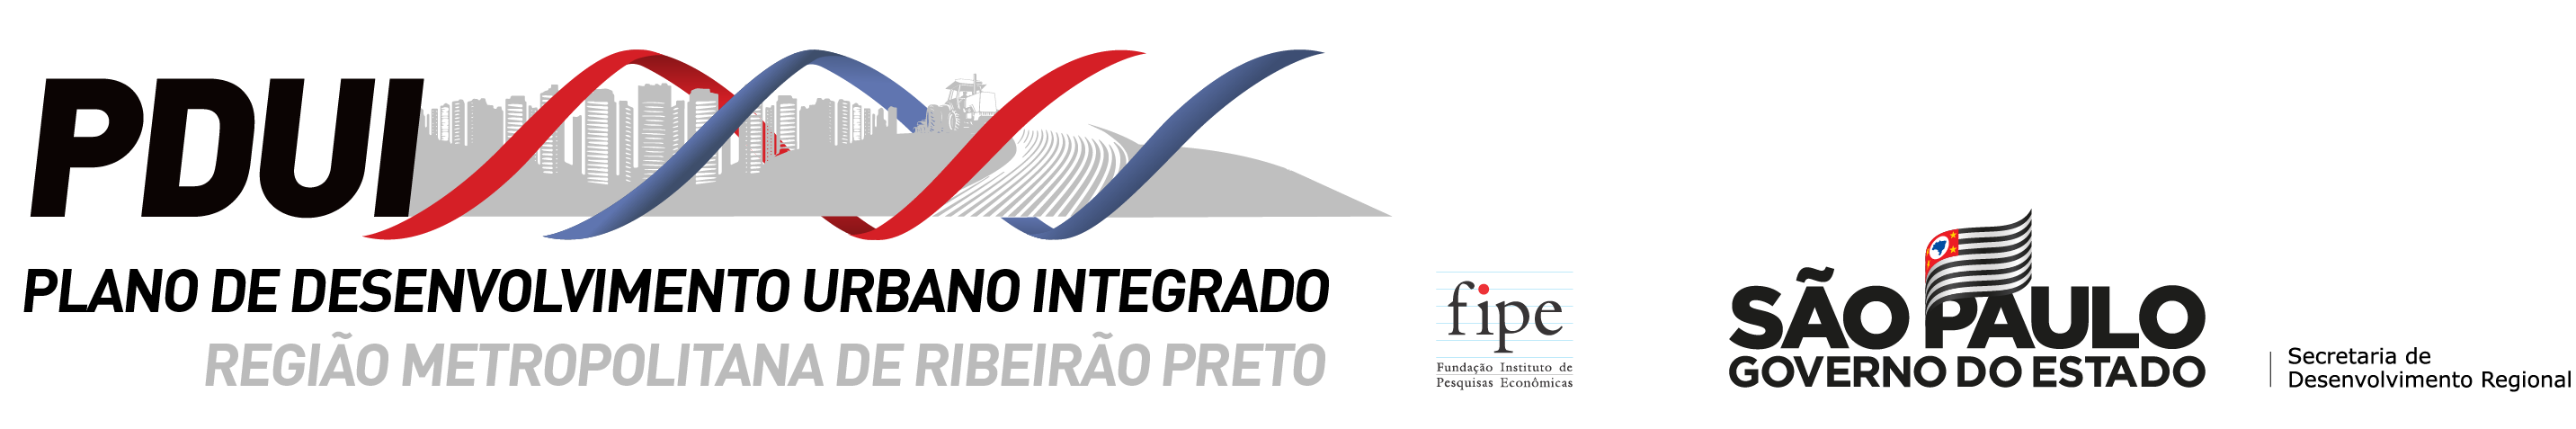 PDUI-RMRP (Região Metropolitana de Ribeirão Preto)